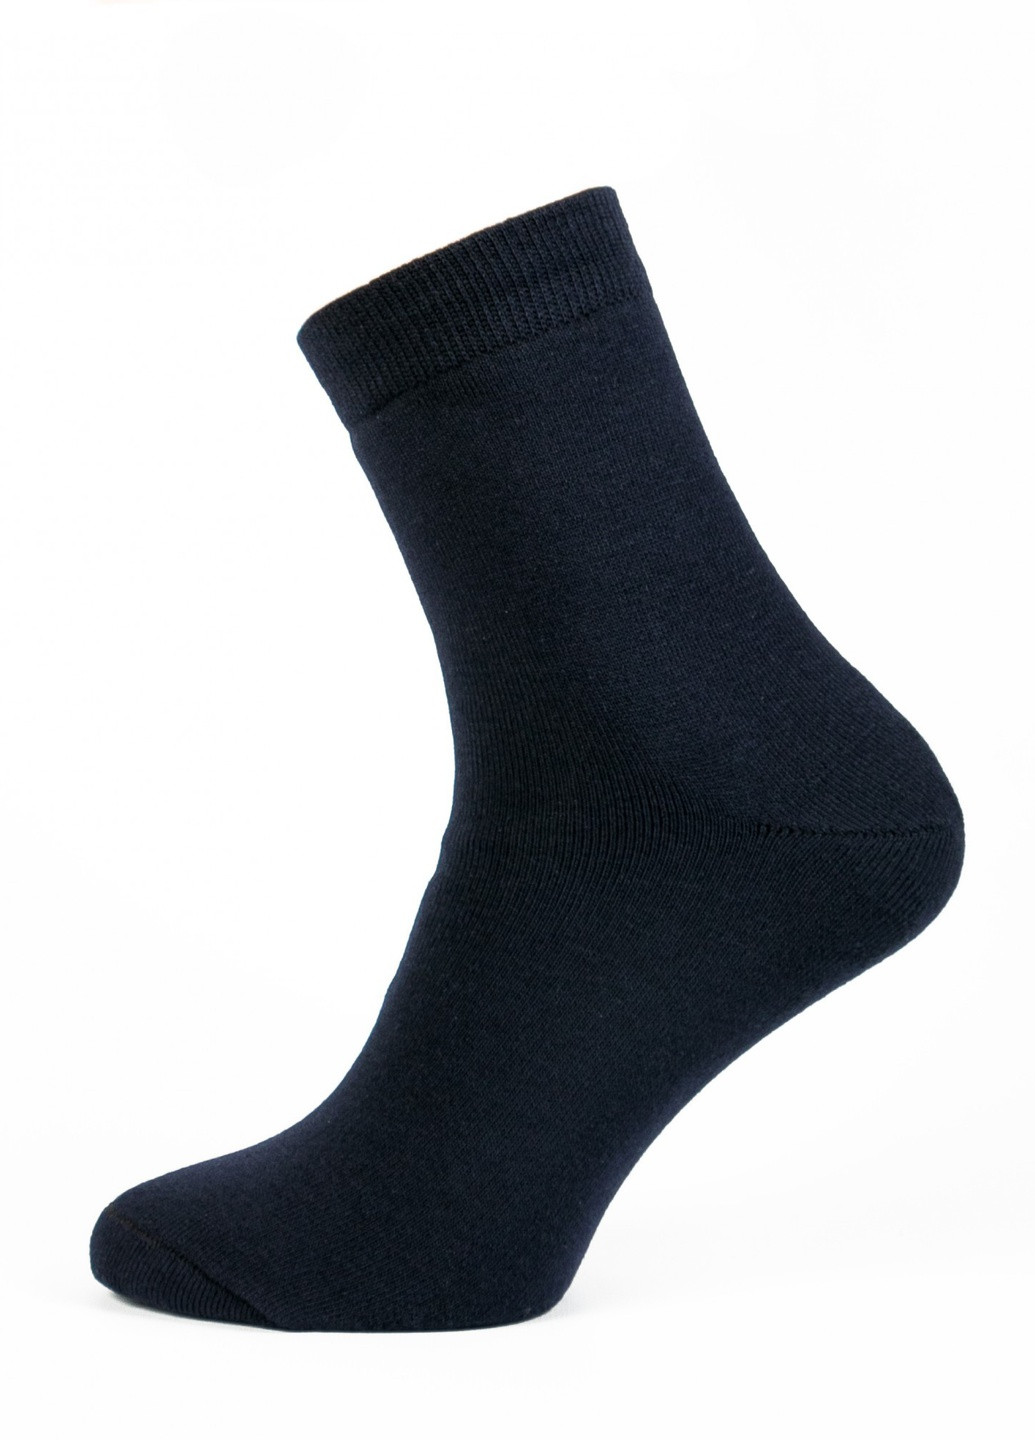 Шкарпетки чоловічі ТМ "Нова пара" 428 НОВА ПАРА середня висота (257108294)